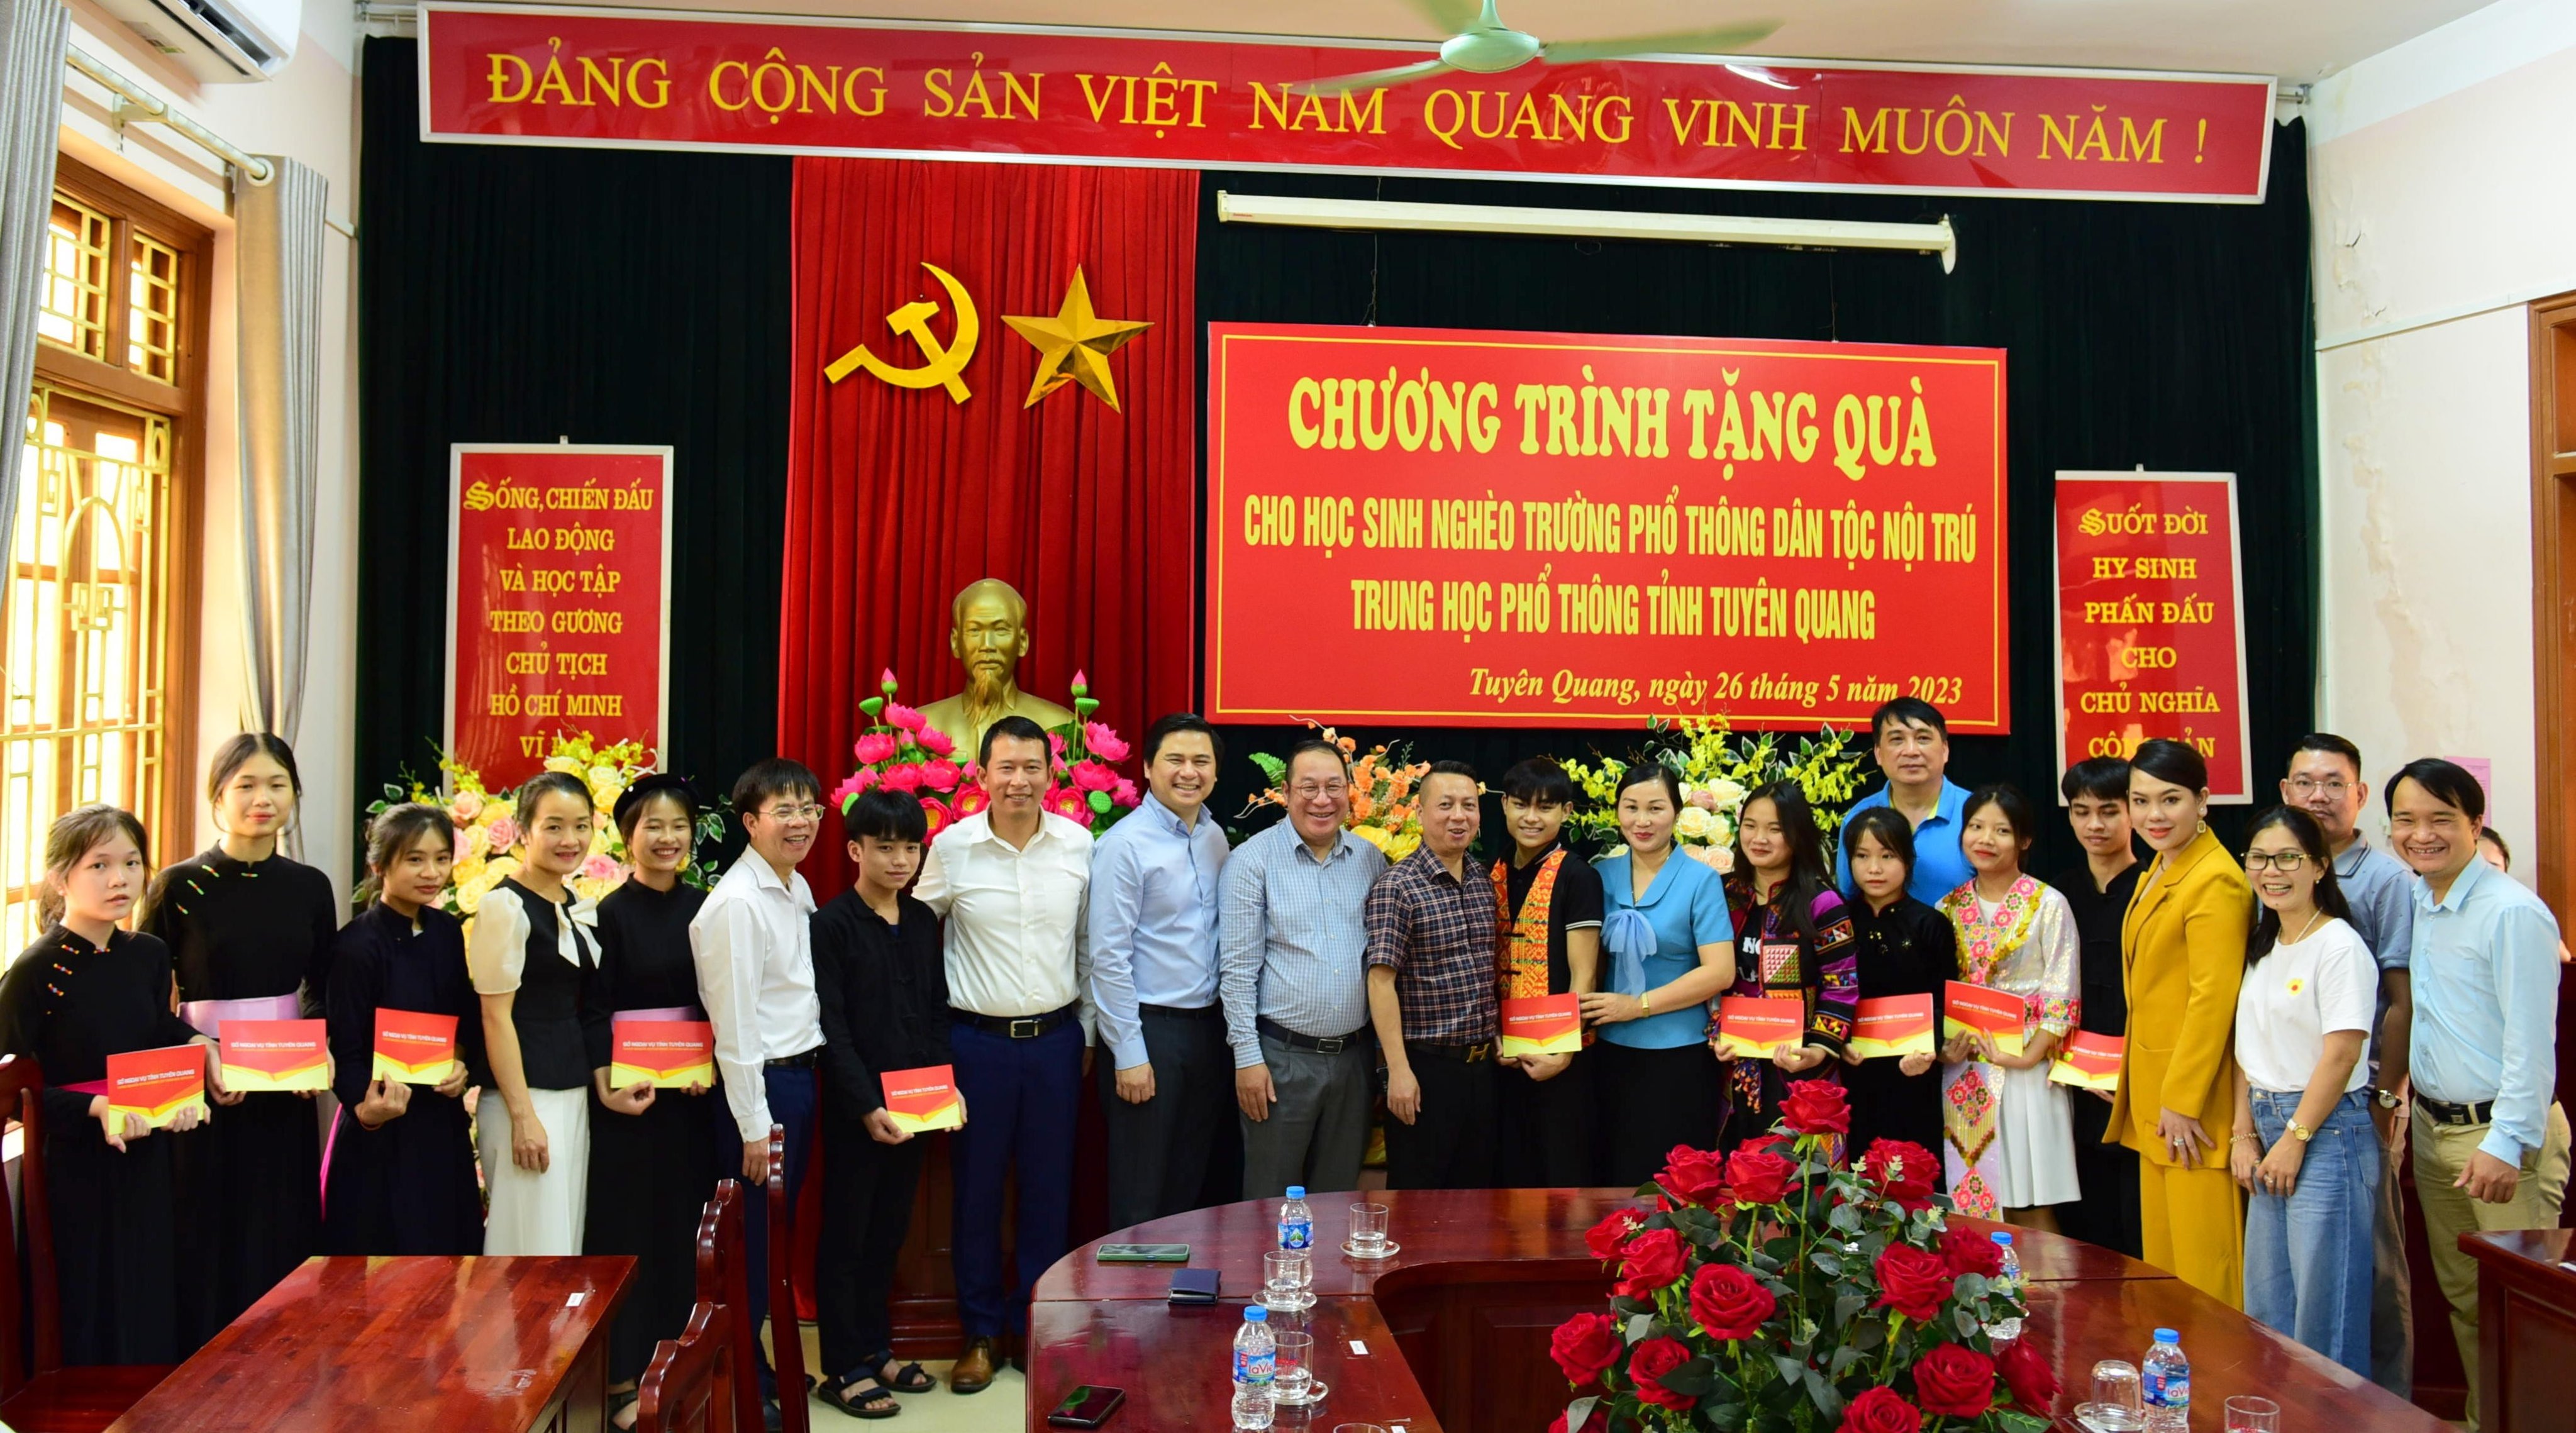 Nhiều phần quà ý nghĩa được trao đến các em học sinh nghèo của Trường THPT Dân tộc Nội trú tỉnh Tuyên Quang năm học 2022-2023